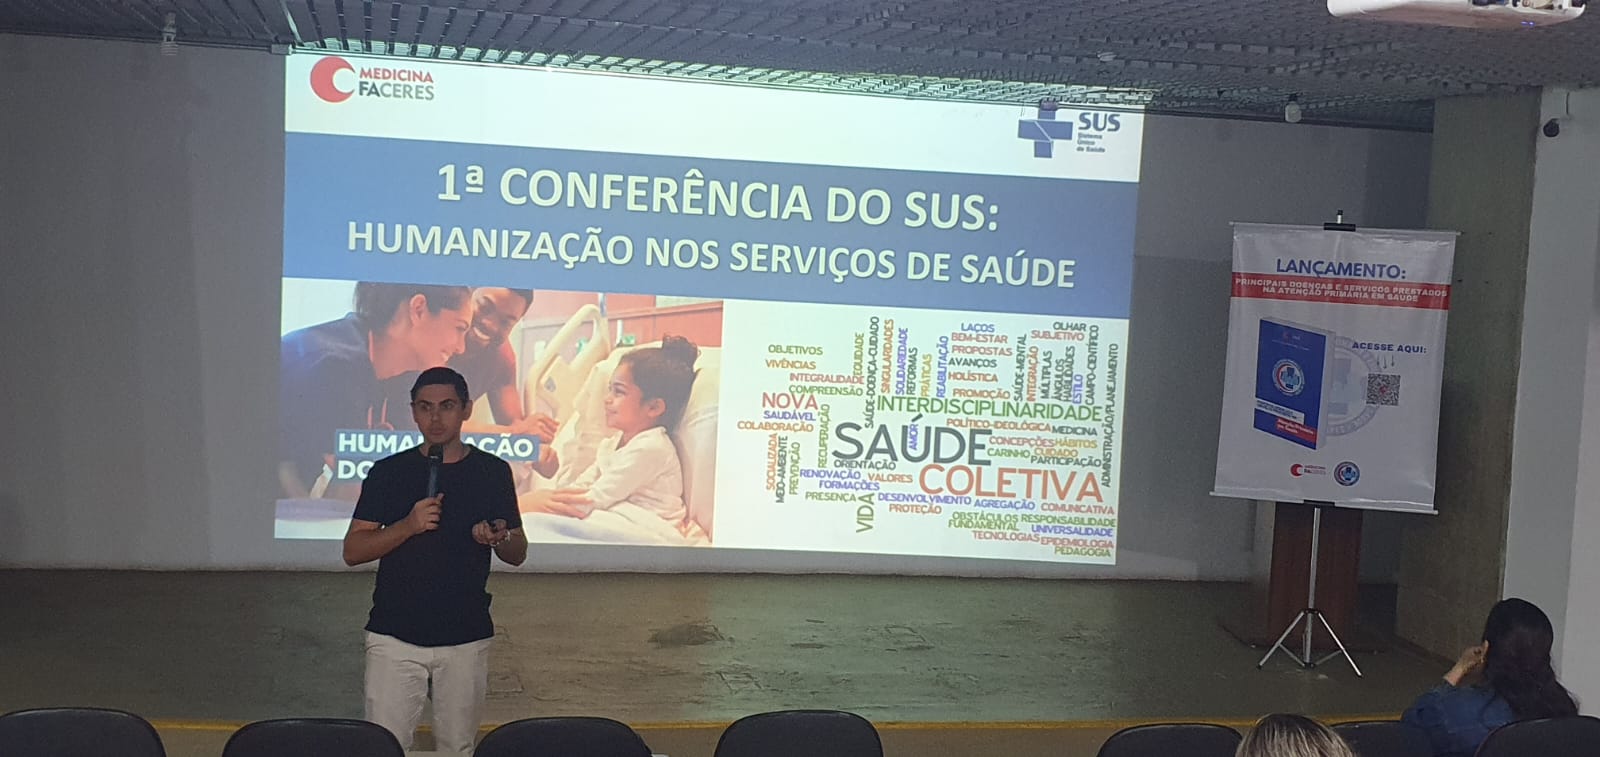 Faculdade de medicina FACERES realiza 1ª Conferência do SUS: Humanização nos serviços de saúde